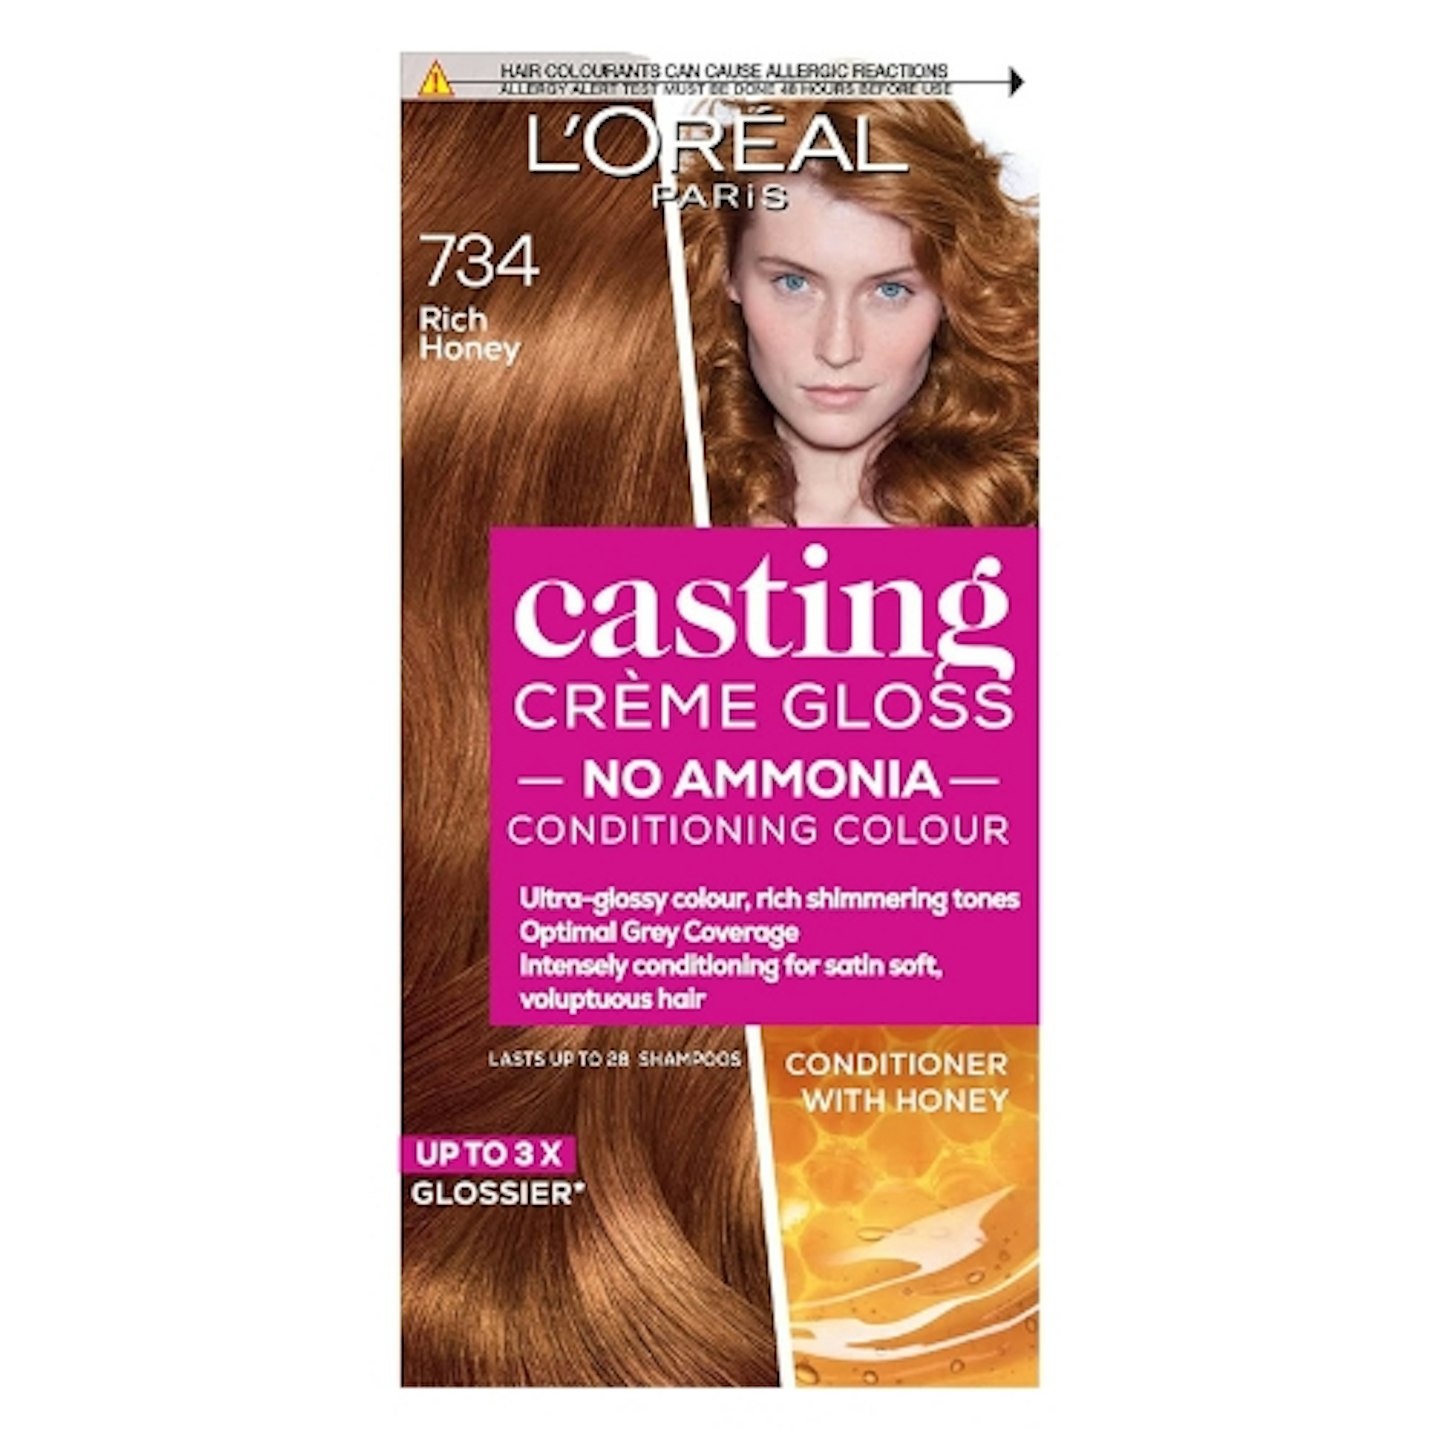 L’Oréal Paris, Semi-Permanent Hair Dye, 734 Rich Honey Blonde